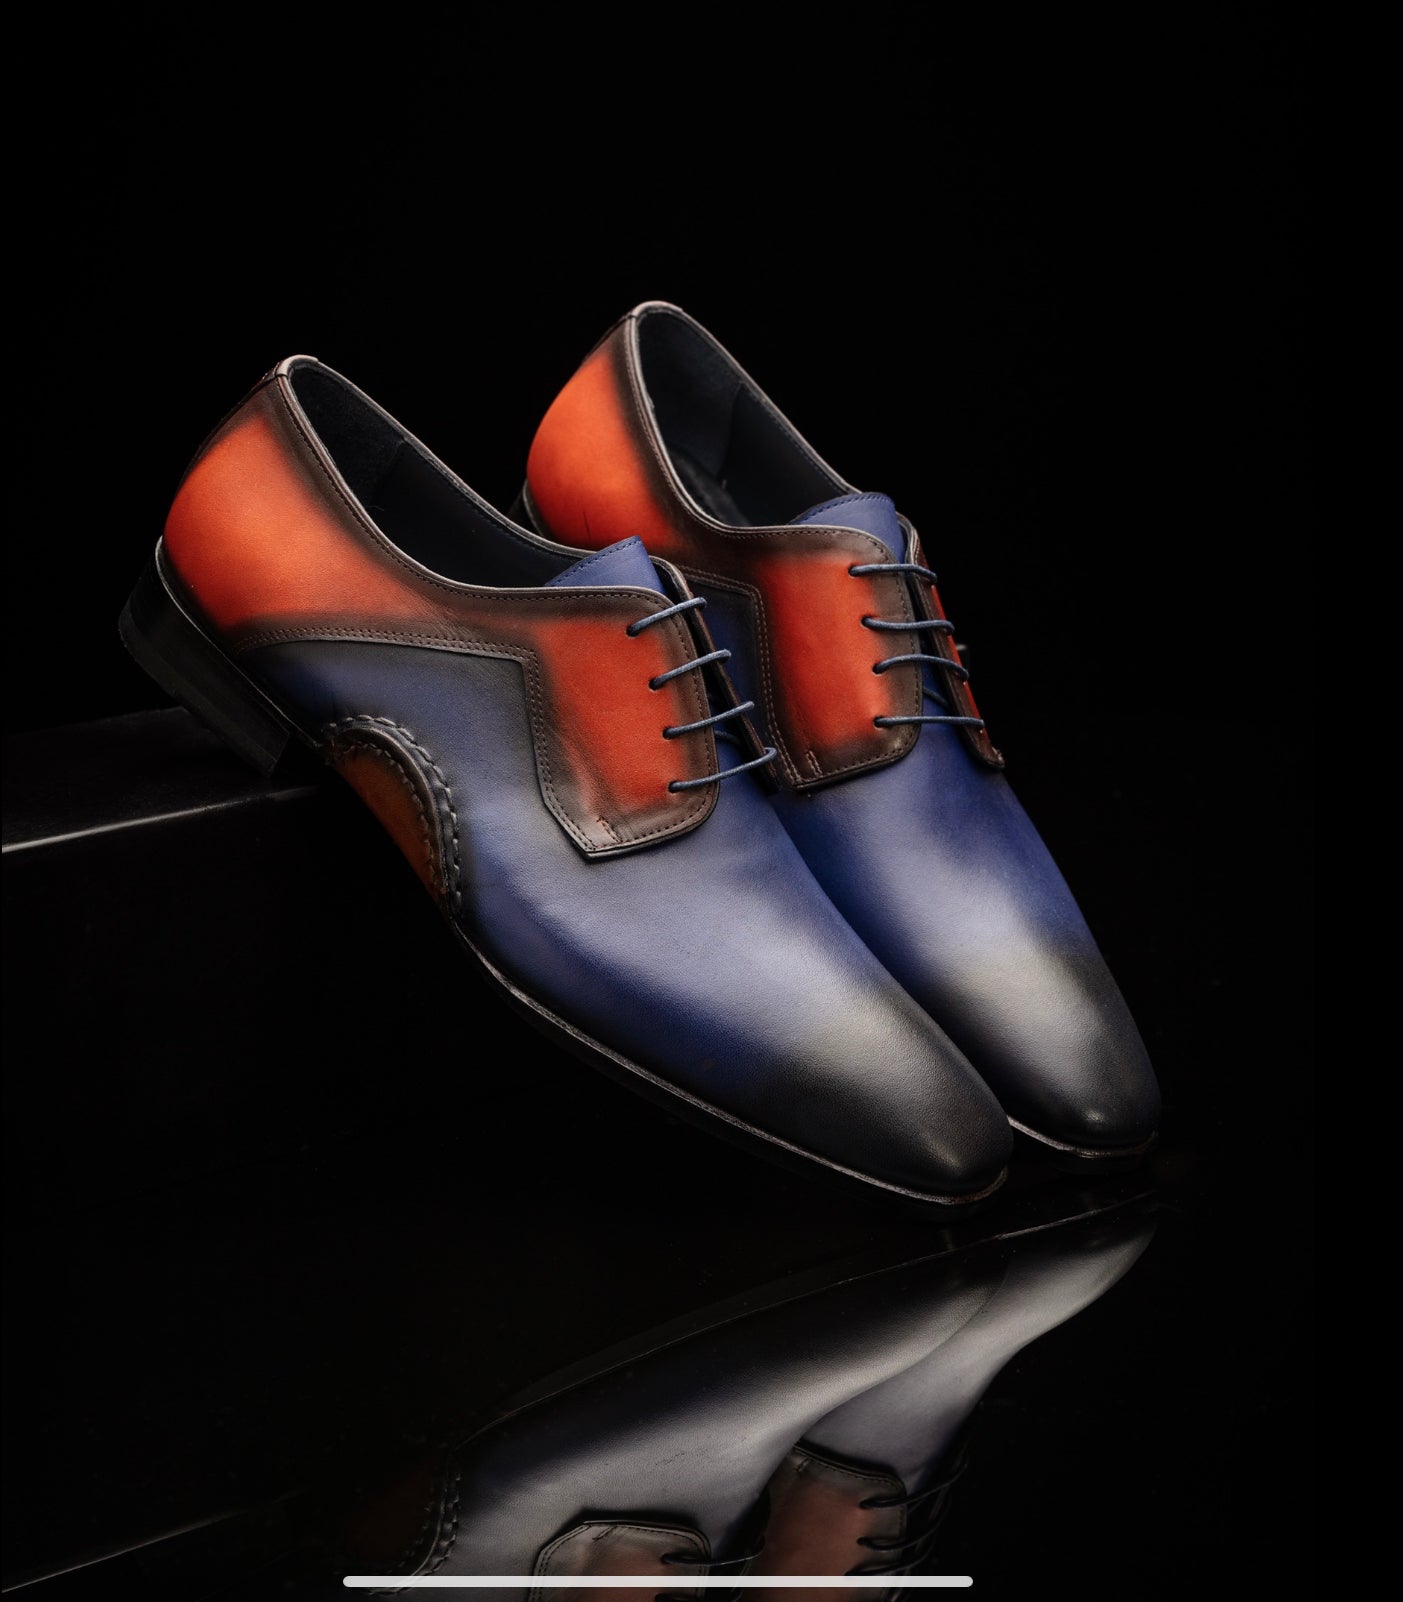 The Opanka Patina Shoes - Blue &amp; Orange - Brogues by Urbbana